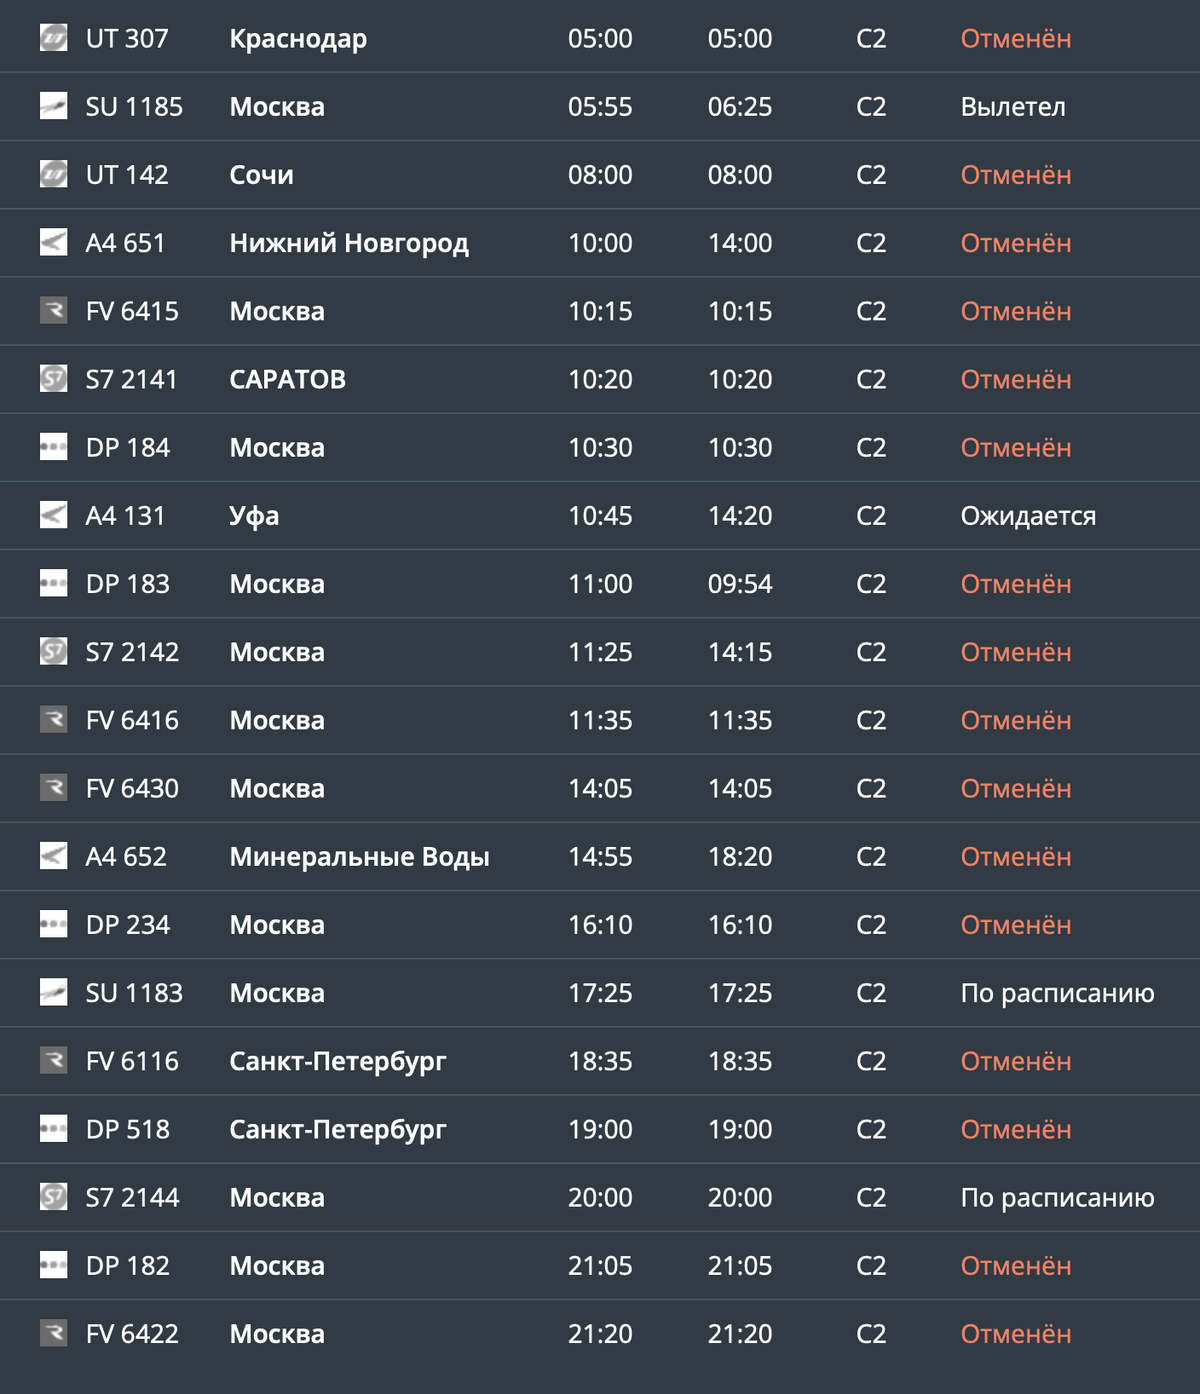 Несмотря на советы Росавиации лететь через Волгоград, это до сих пор рискованно: 25 февраля из 20 рейсов 16 отменены. Источник: аэропортволгоград.рф